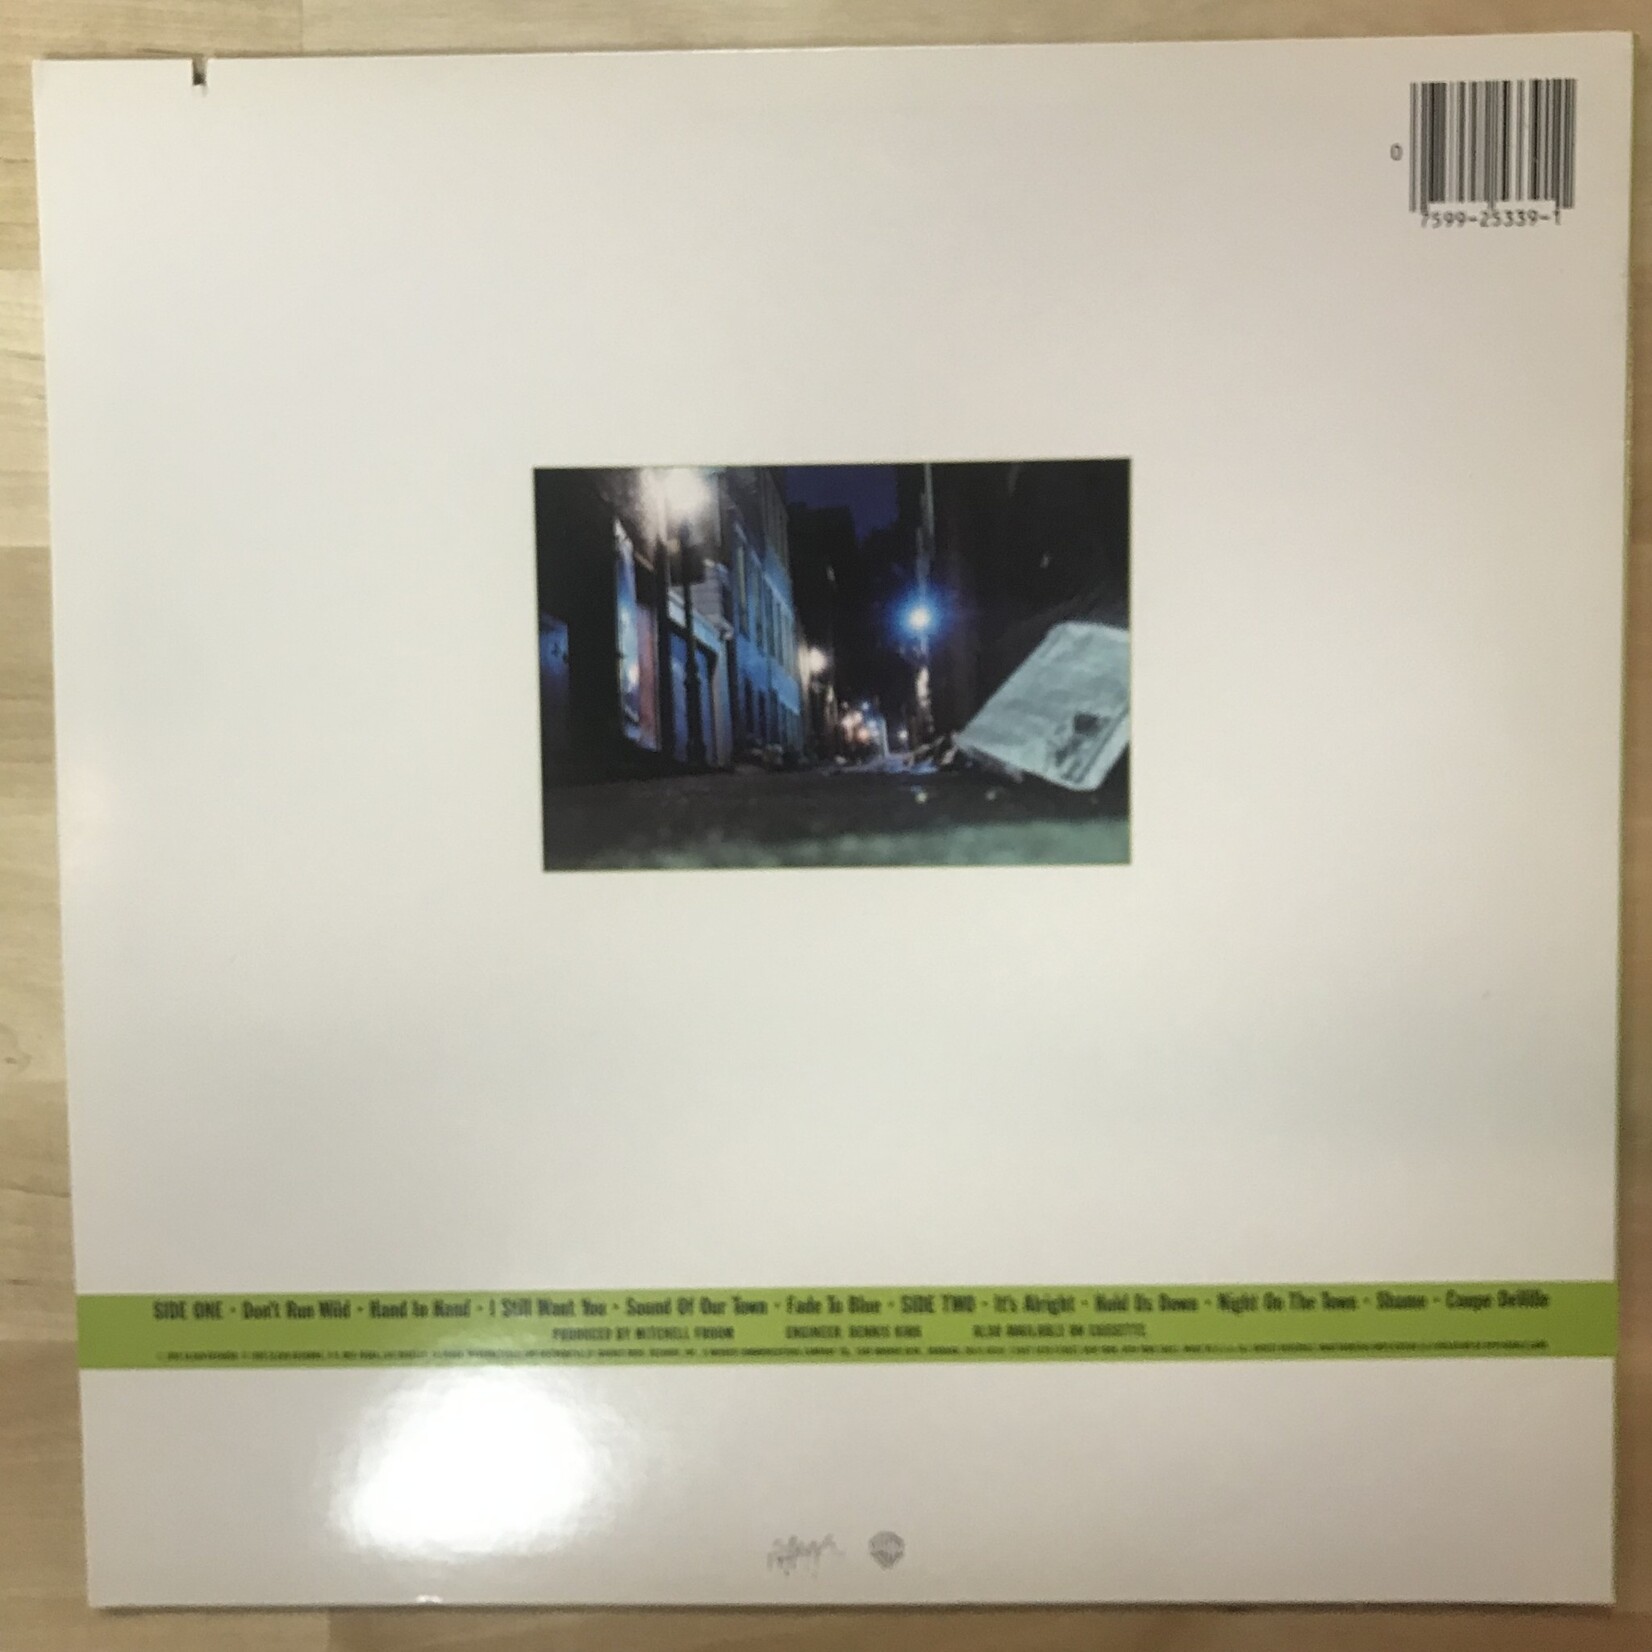 Del Fuegos - Boston, Mass - 25339 1 - Vinyl LP (USED)